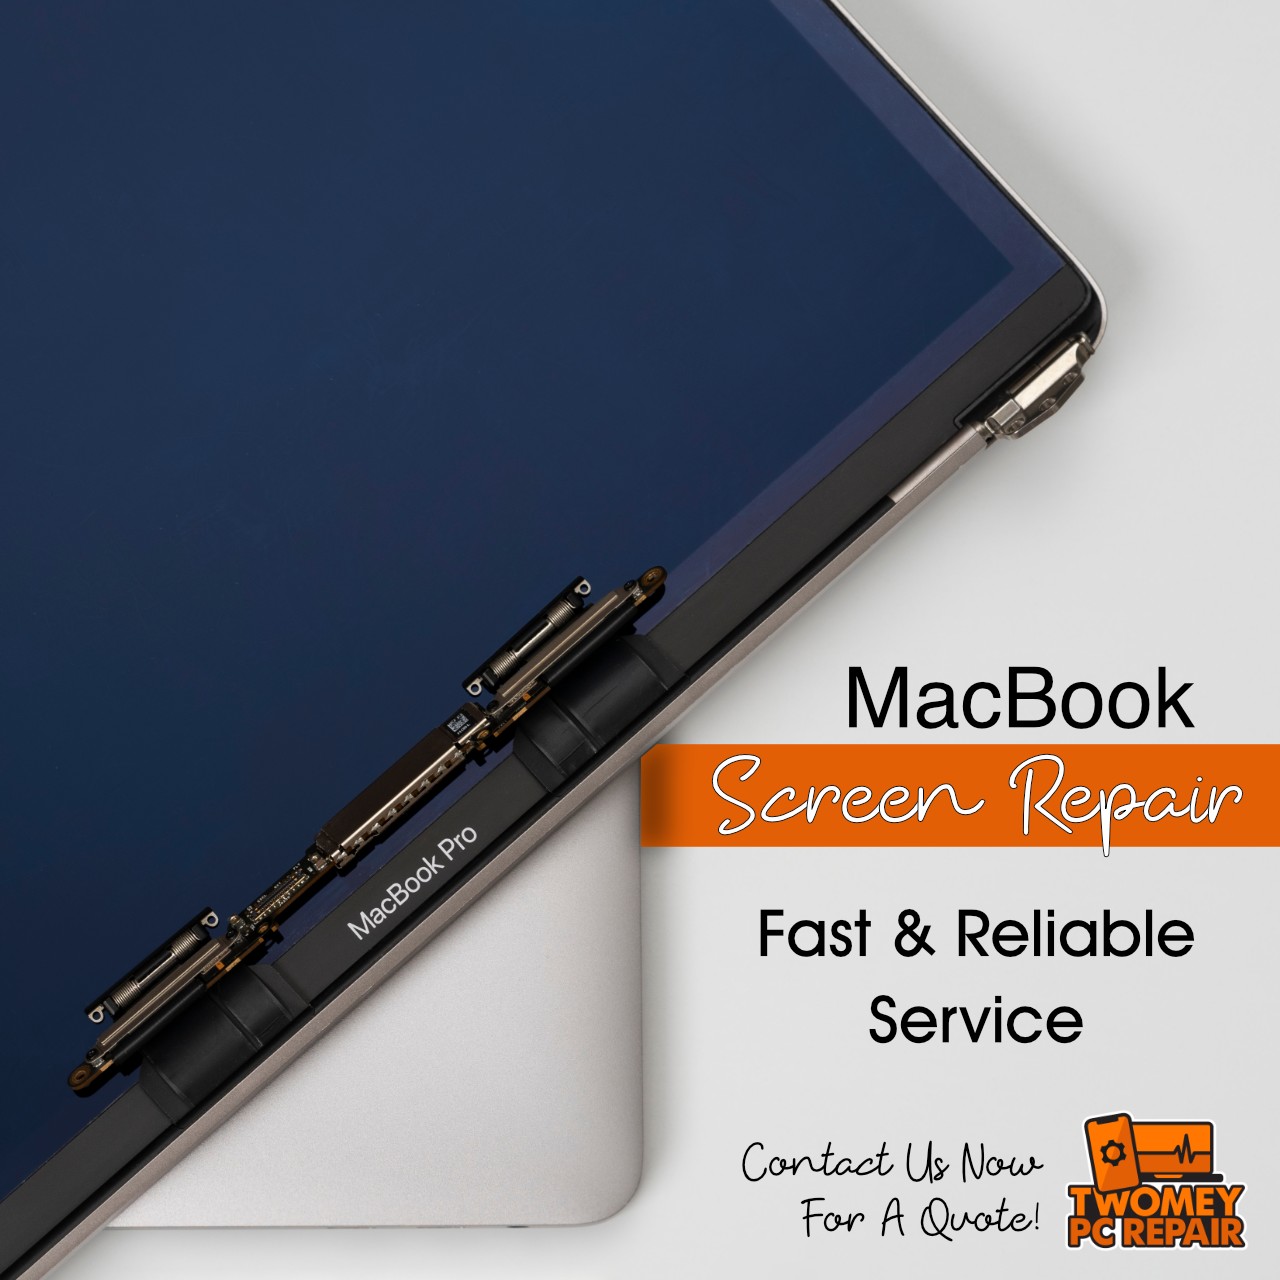 Macbook screen repair fast & reliable service.